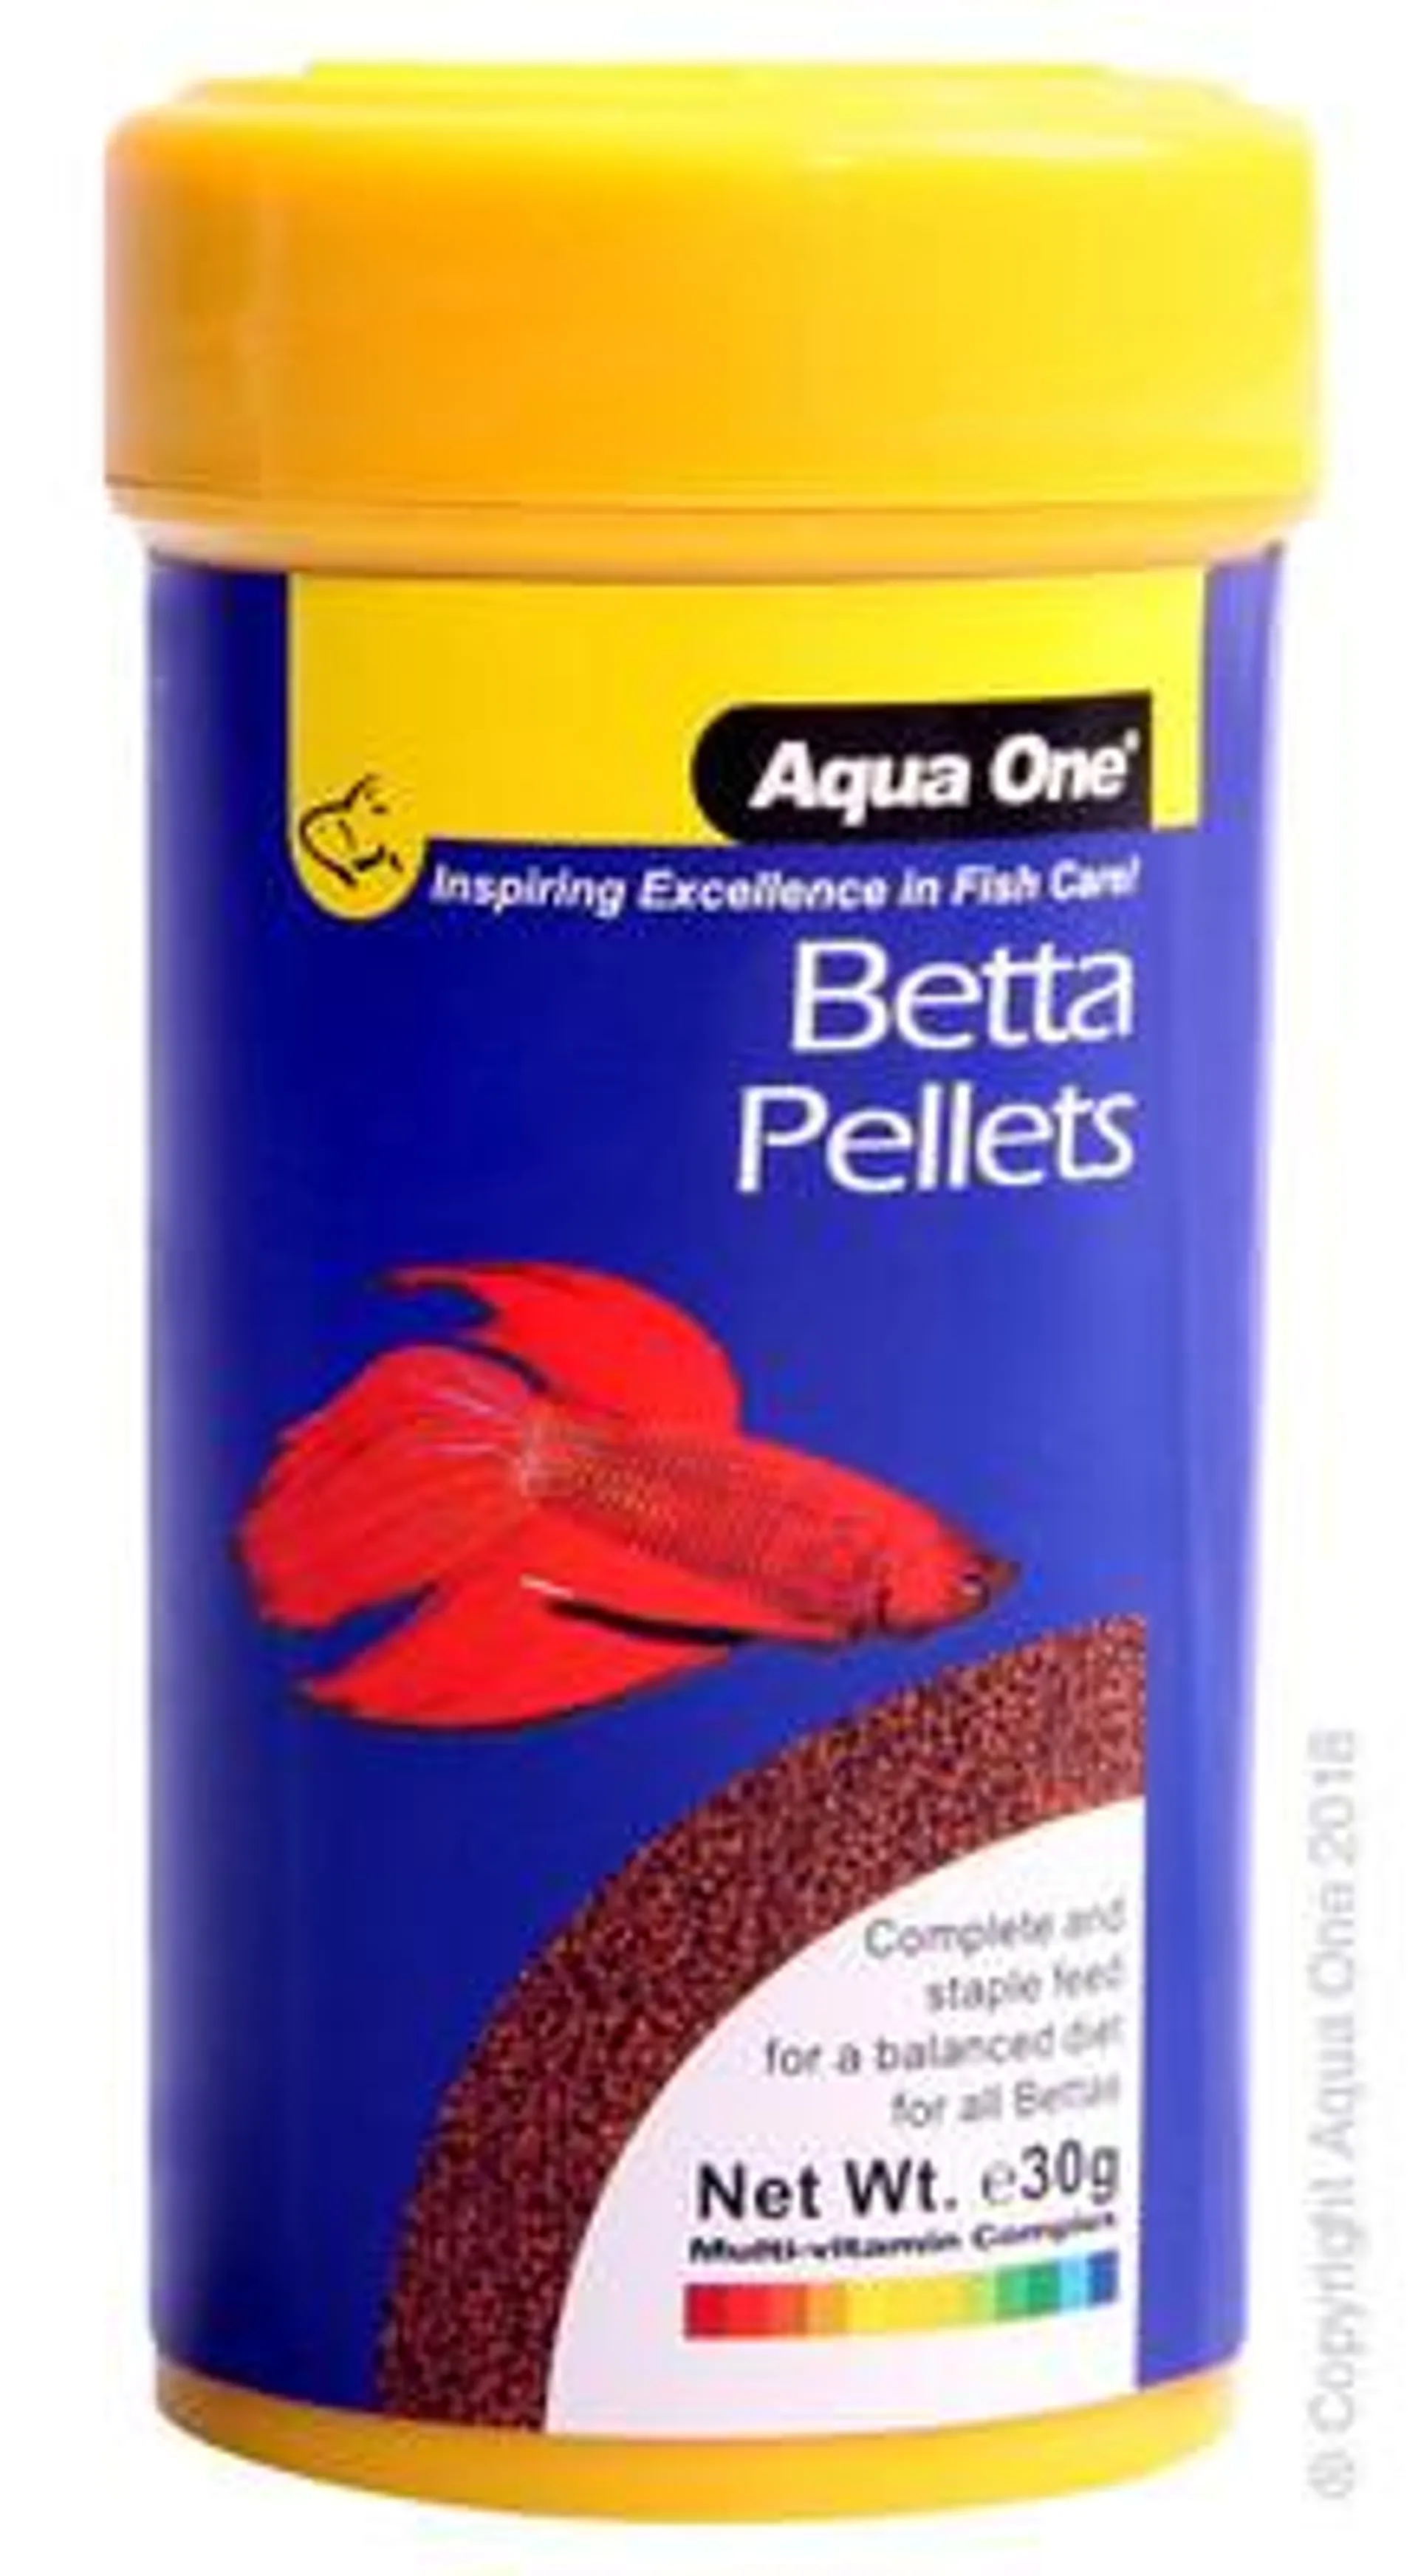 Aqua One Betta Pellet Fish Food